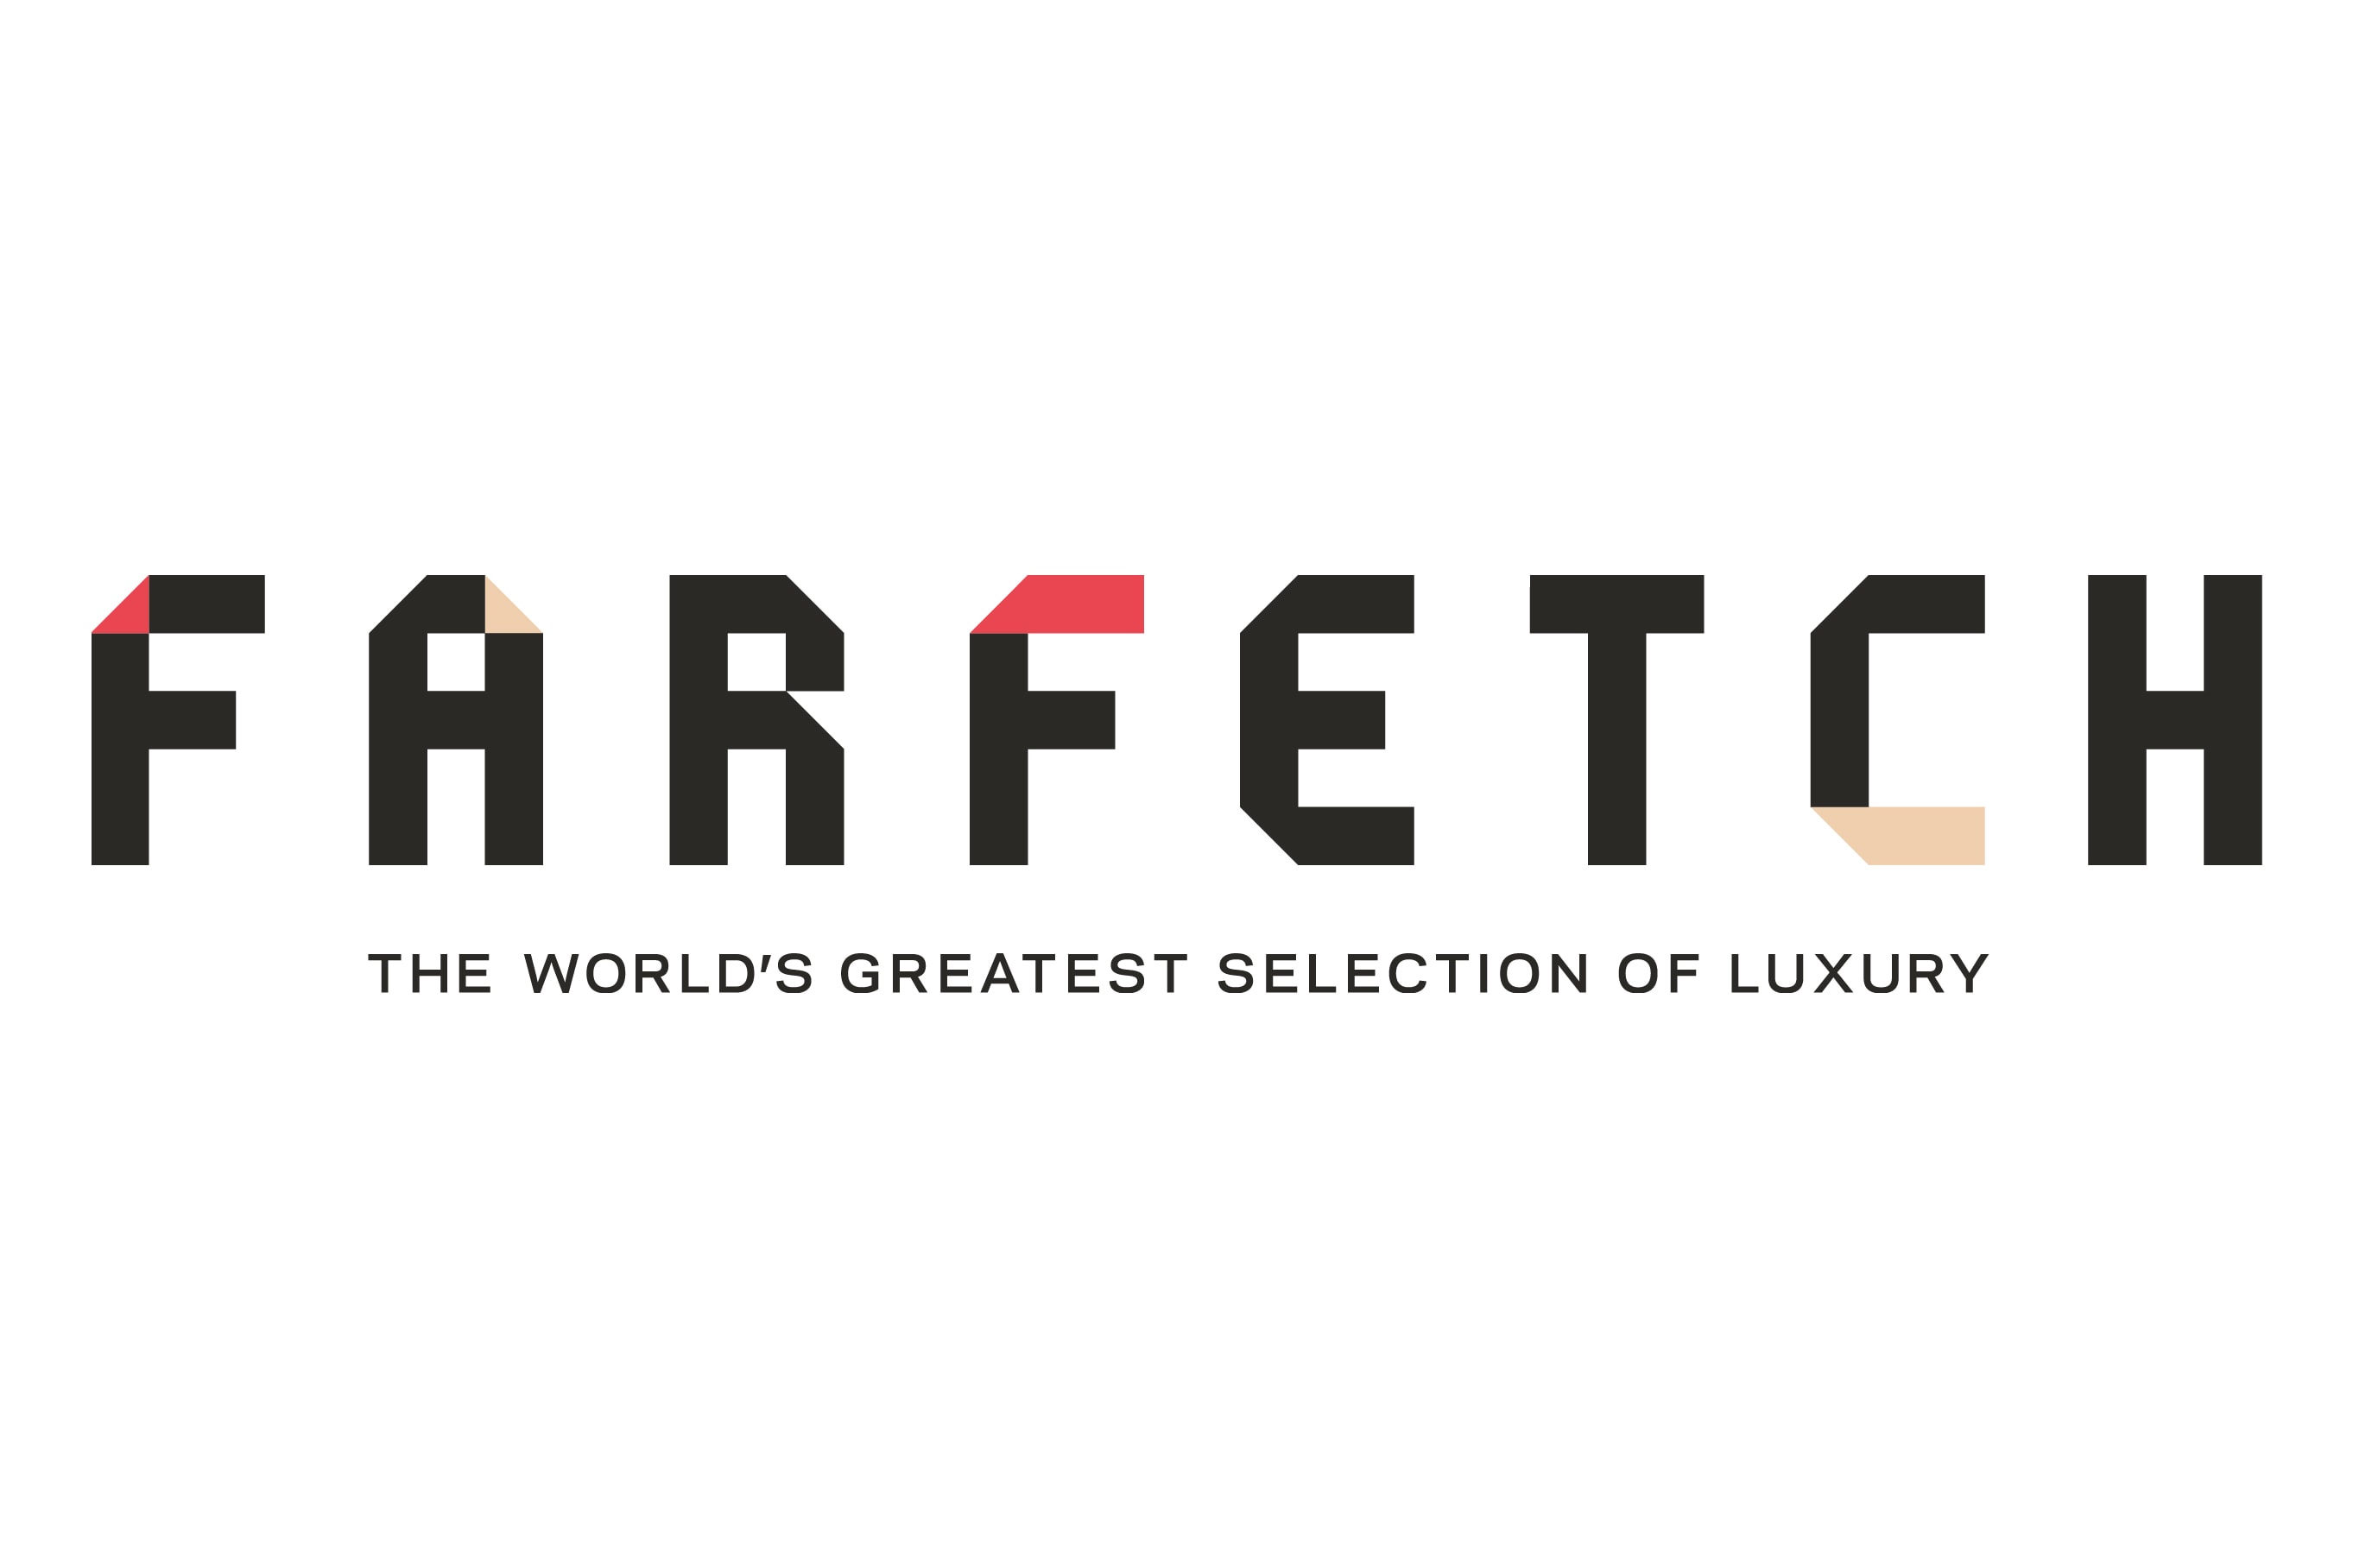 時尚精品網站 Farfetch 宣佈與京東達成戰略合作